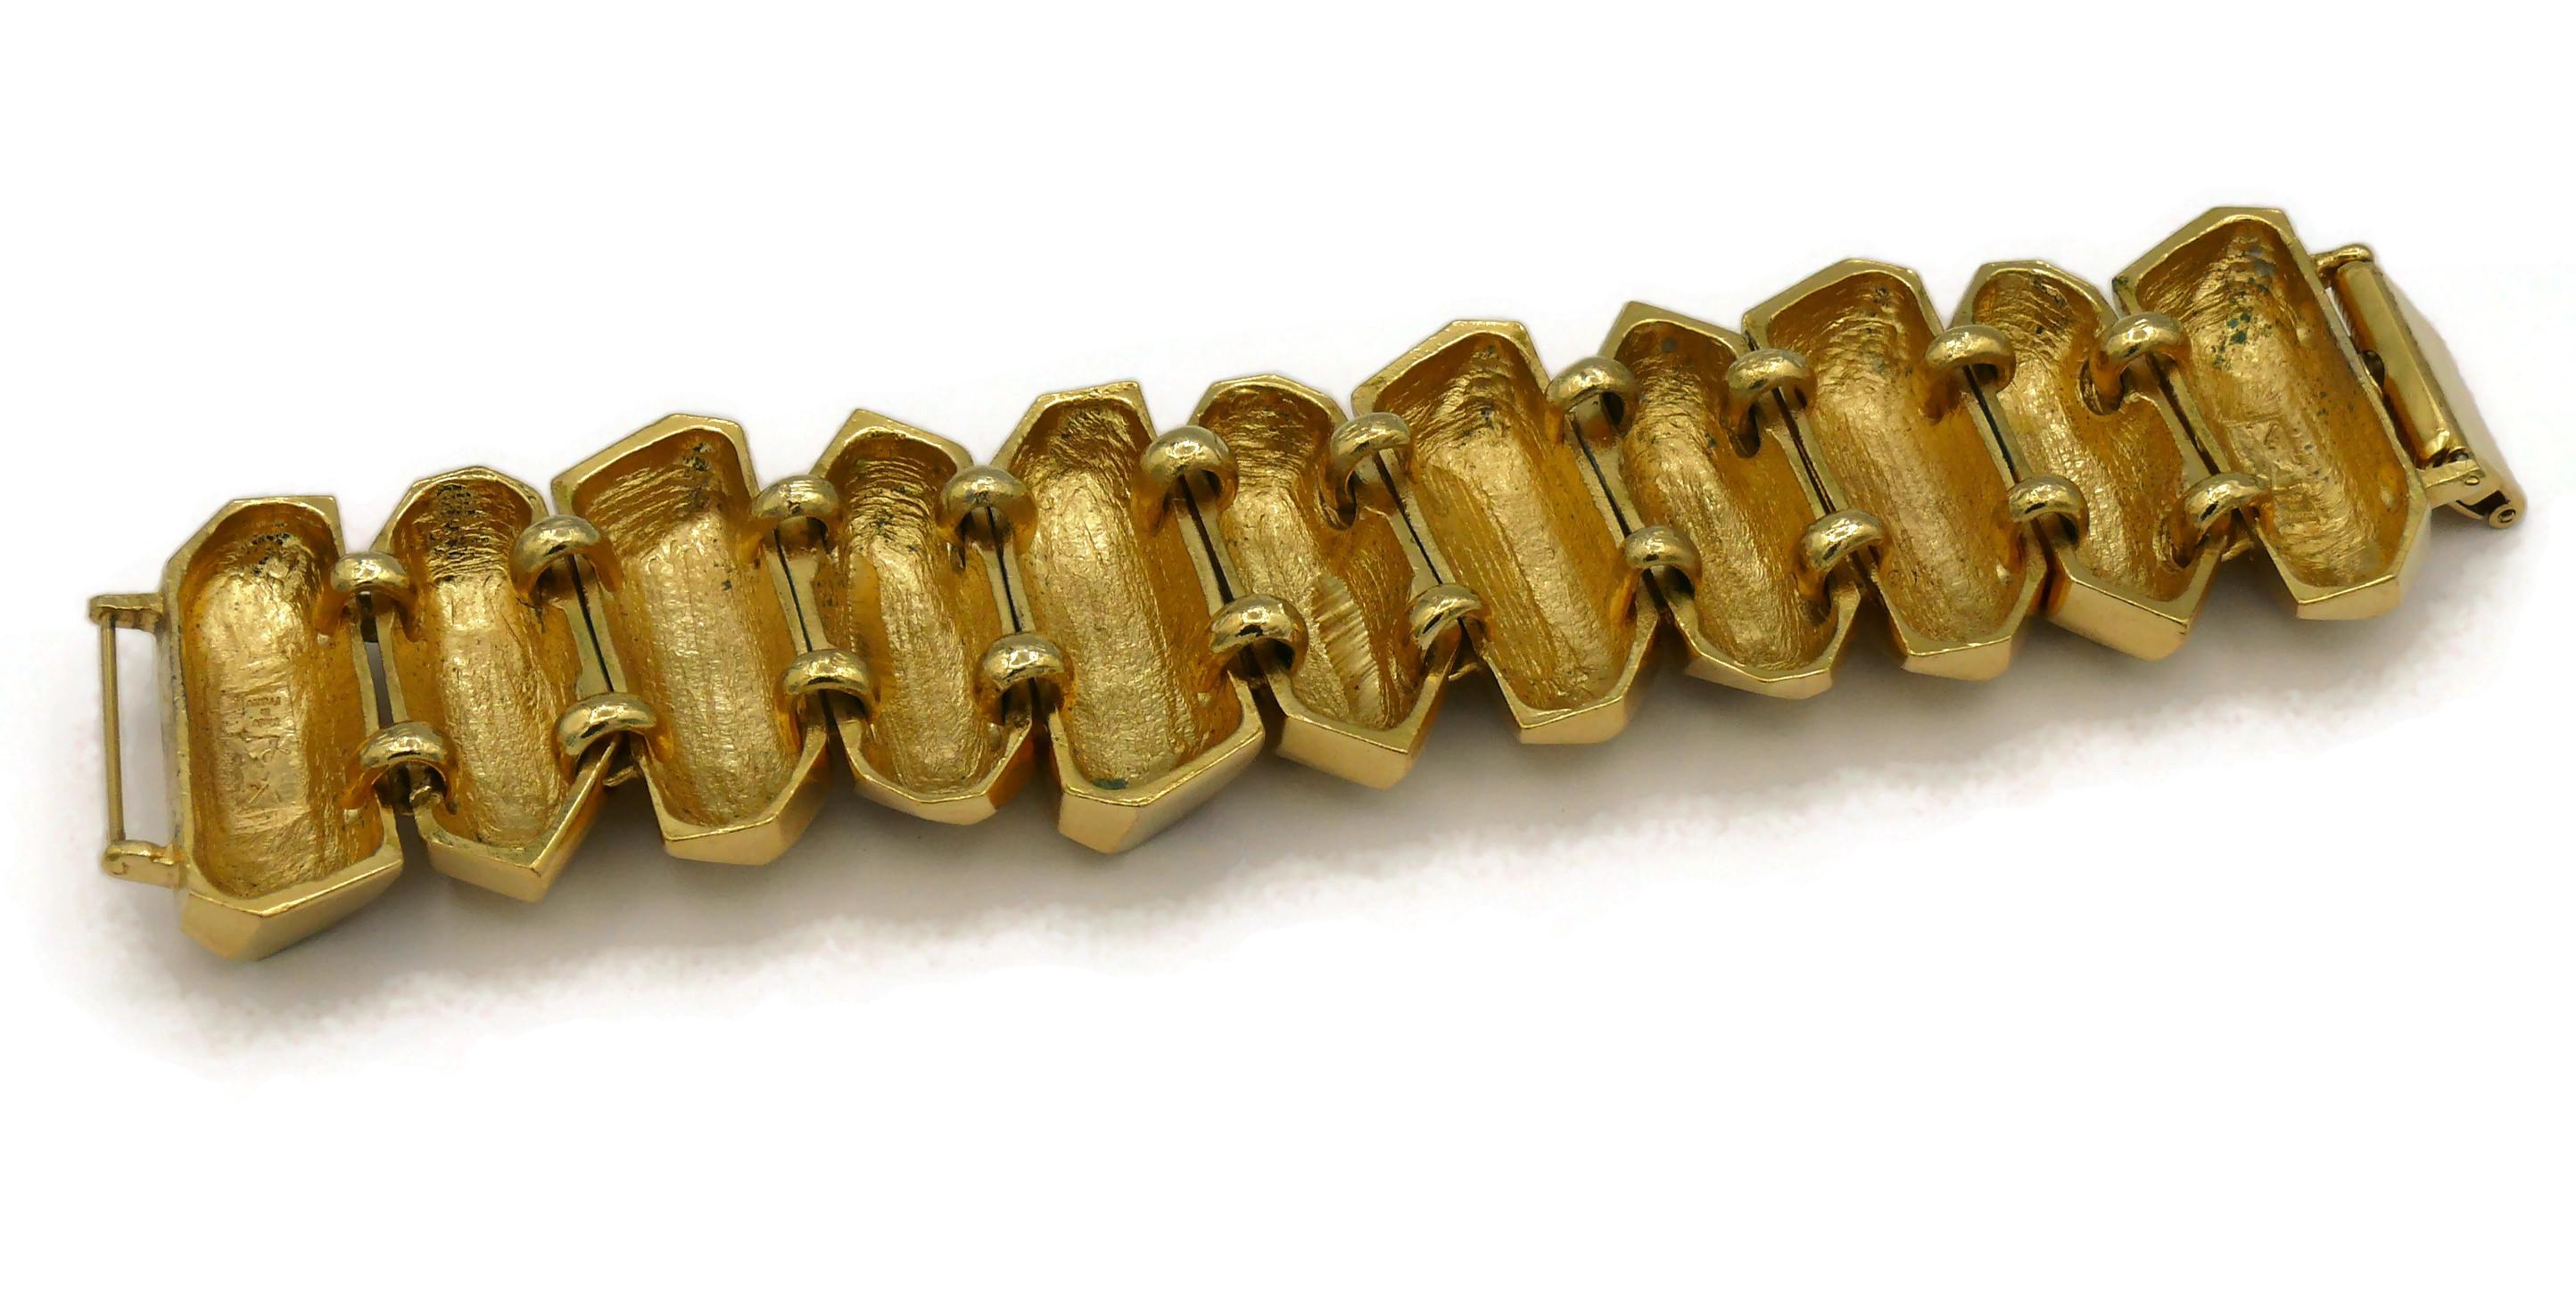 YVES SAINT LAURENT YSL Vintage Gold Tone Rock Crystal Prism Design Cuff Bracelet 7